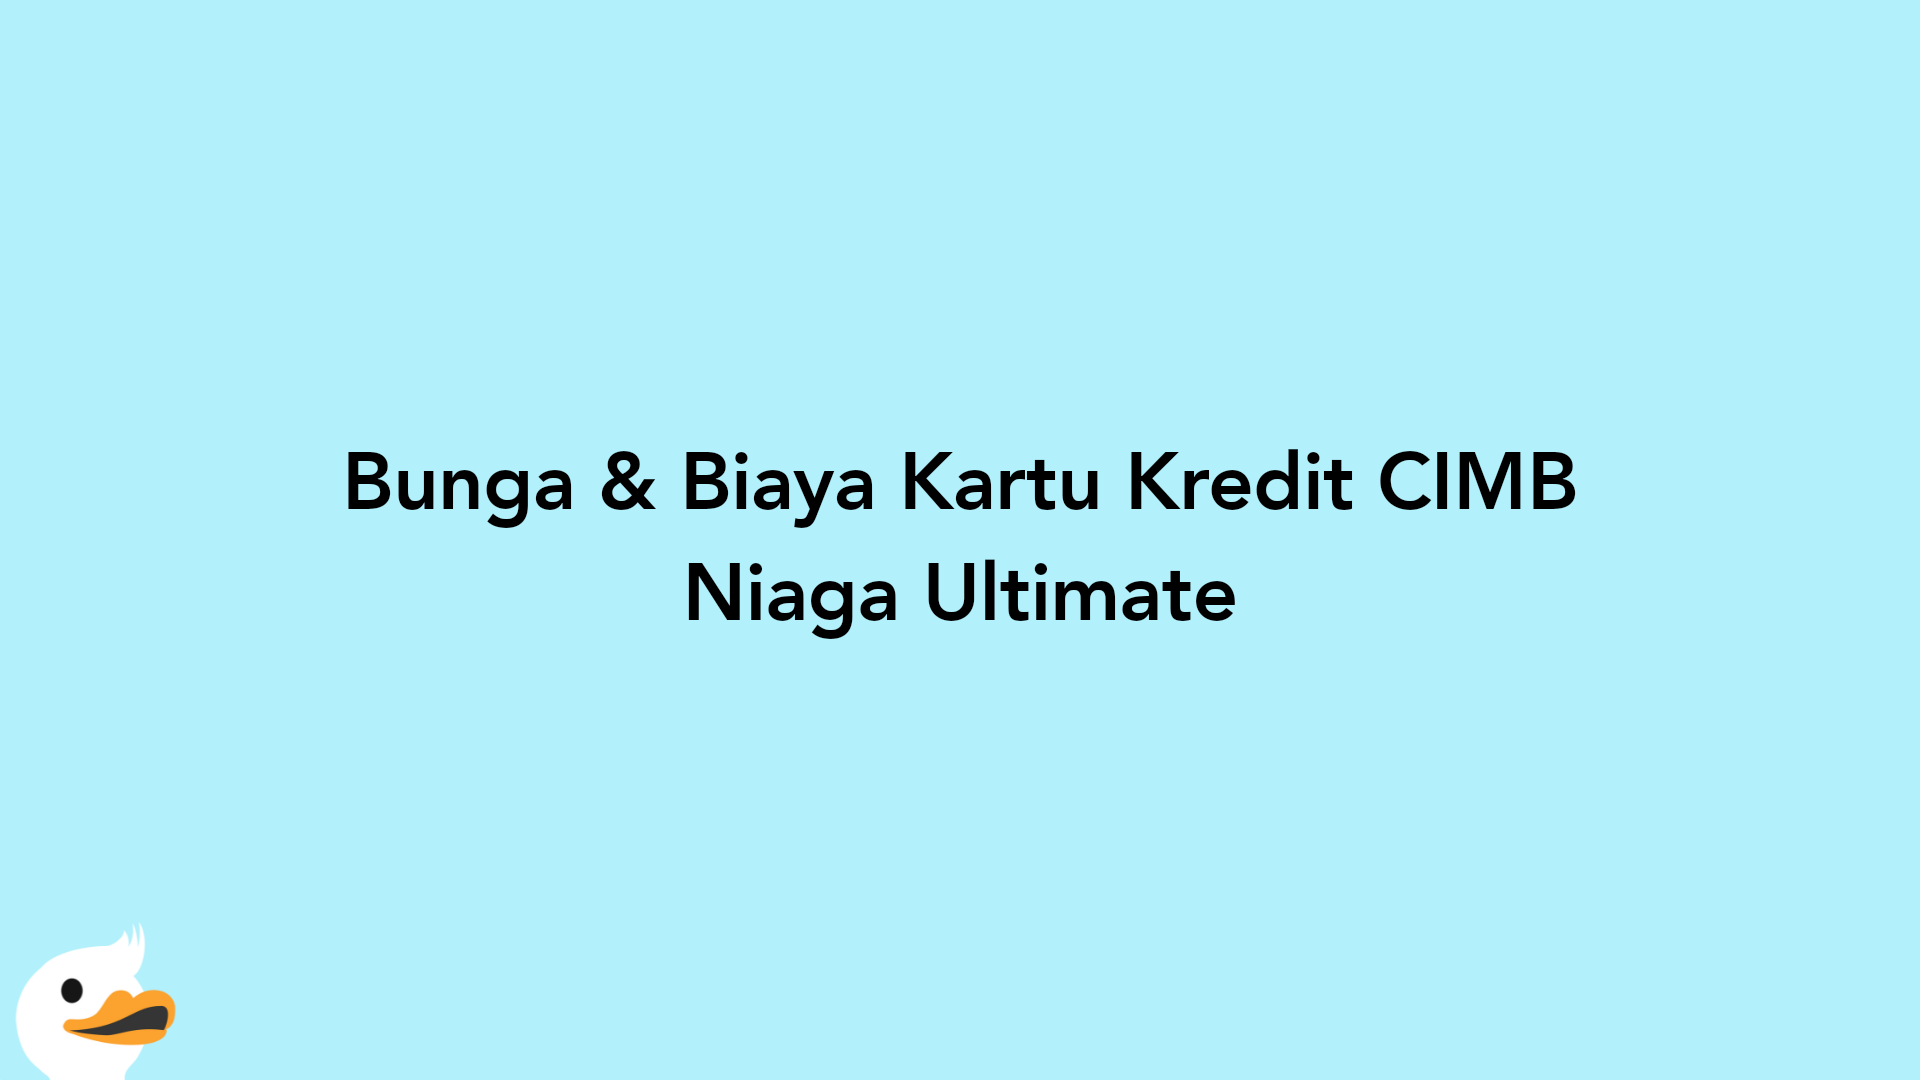 Bunga & Biaya Kartu Kredit CIMB Niaga Ultimate